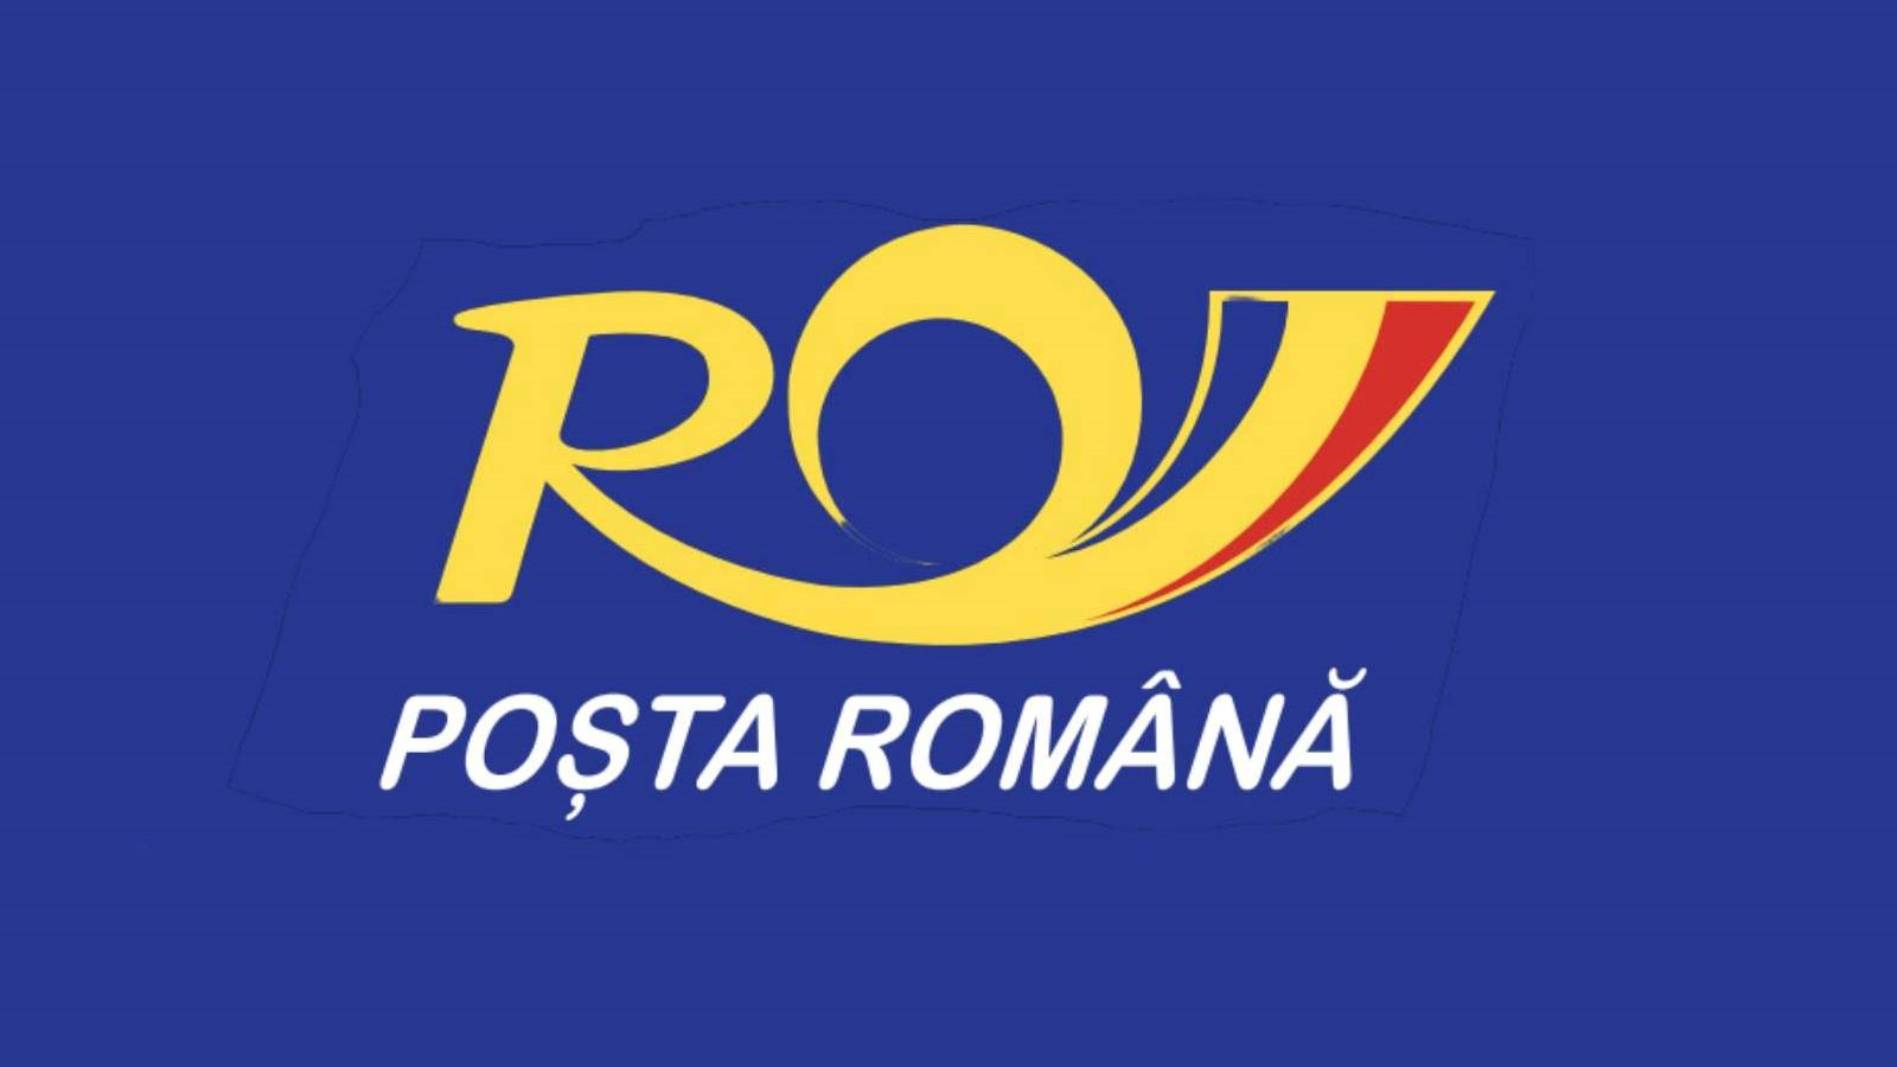 Annonce officielle de la poste roumaine DERNIER MOMENT Vote aux élections parlementaires présidentielles